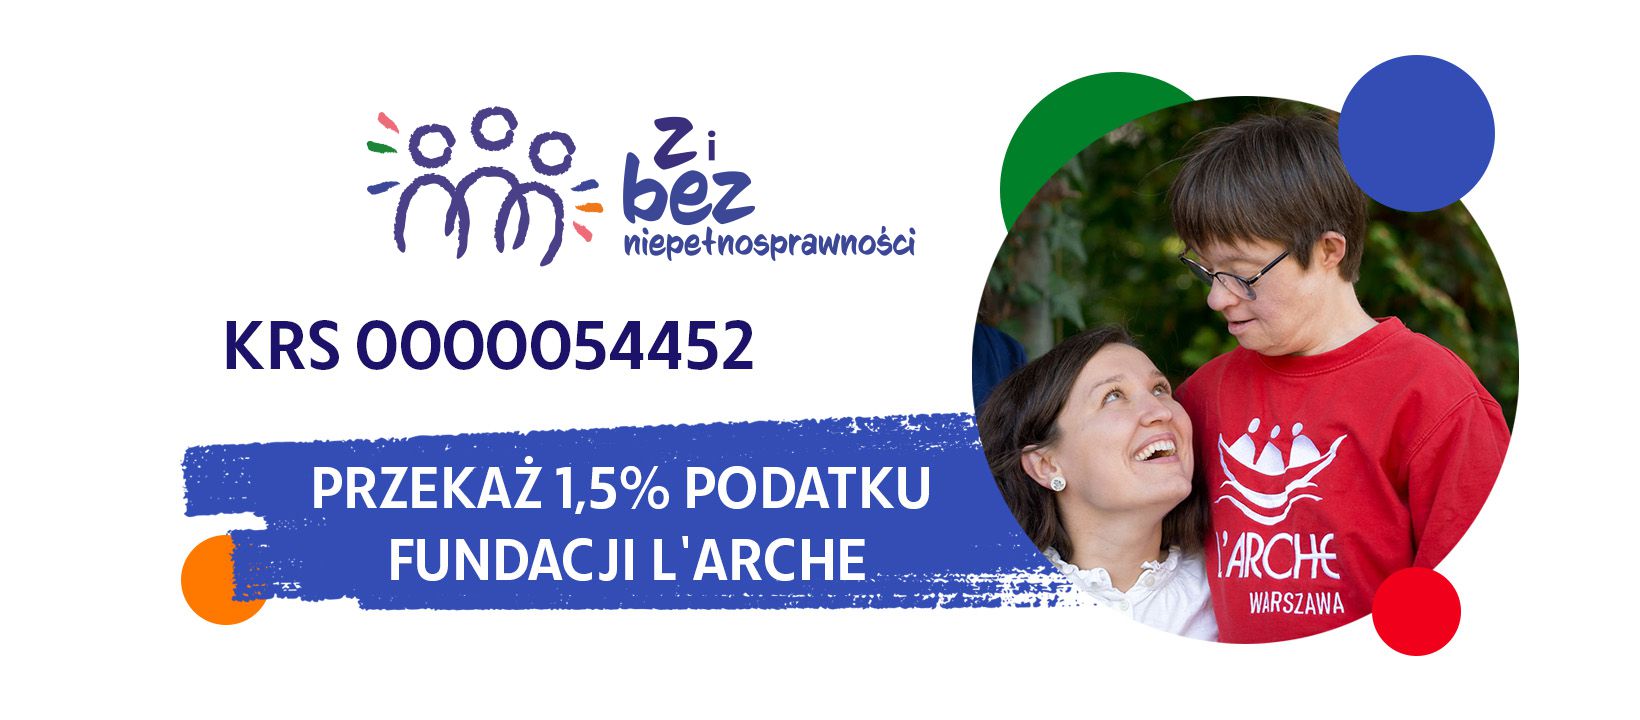 Przekaż 1,5% Fundacji L'Arche Polska KRS: 0000054452